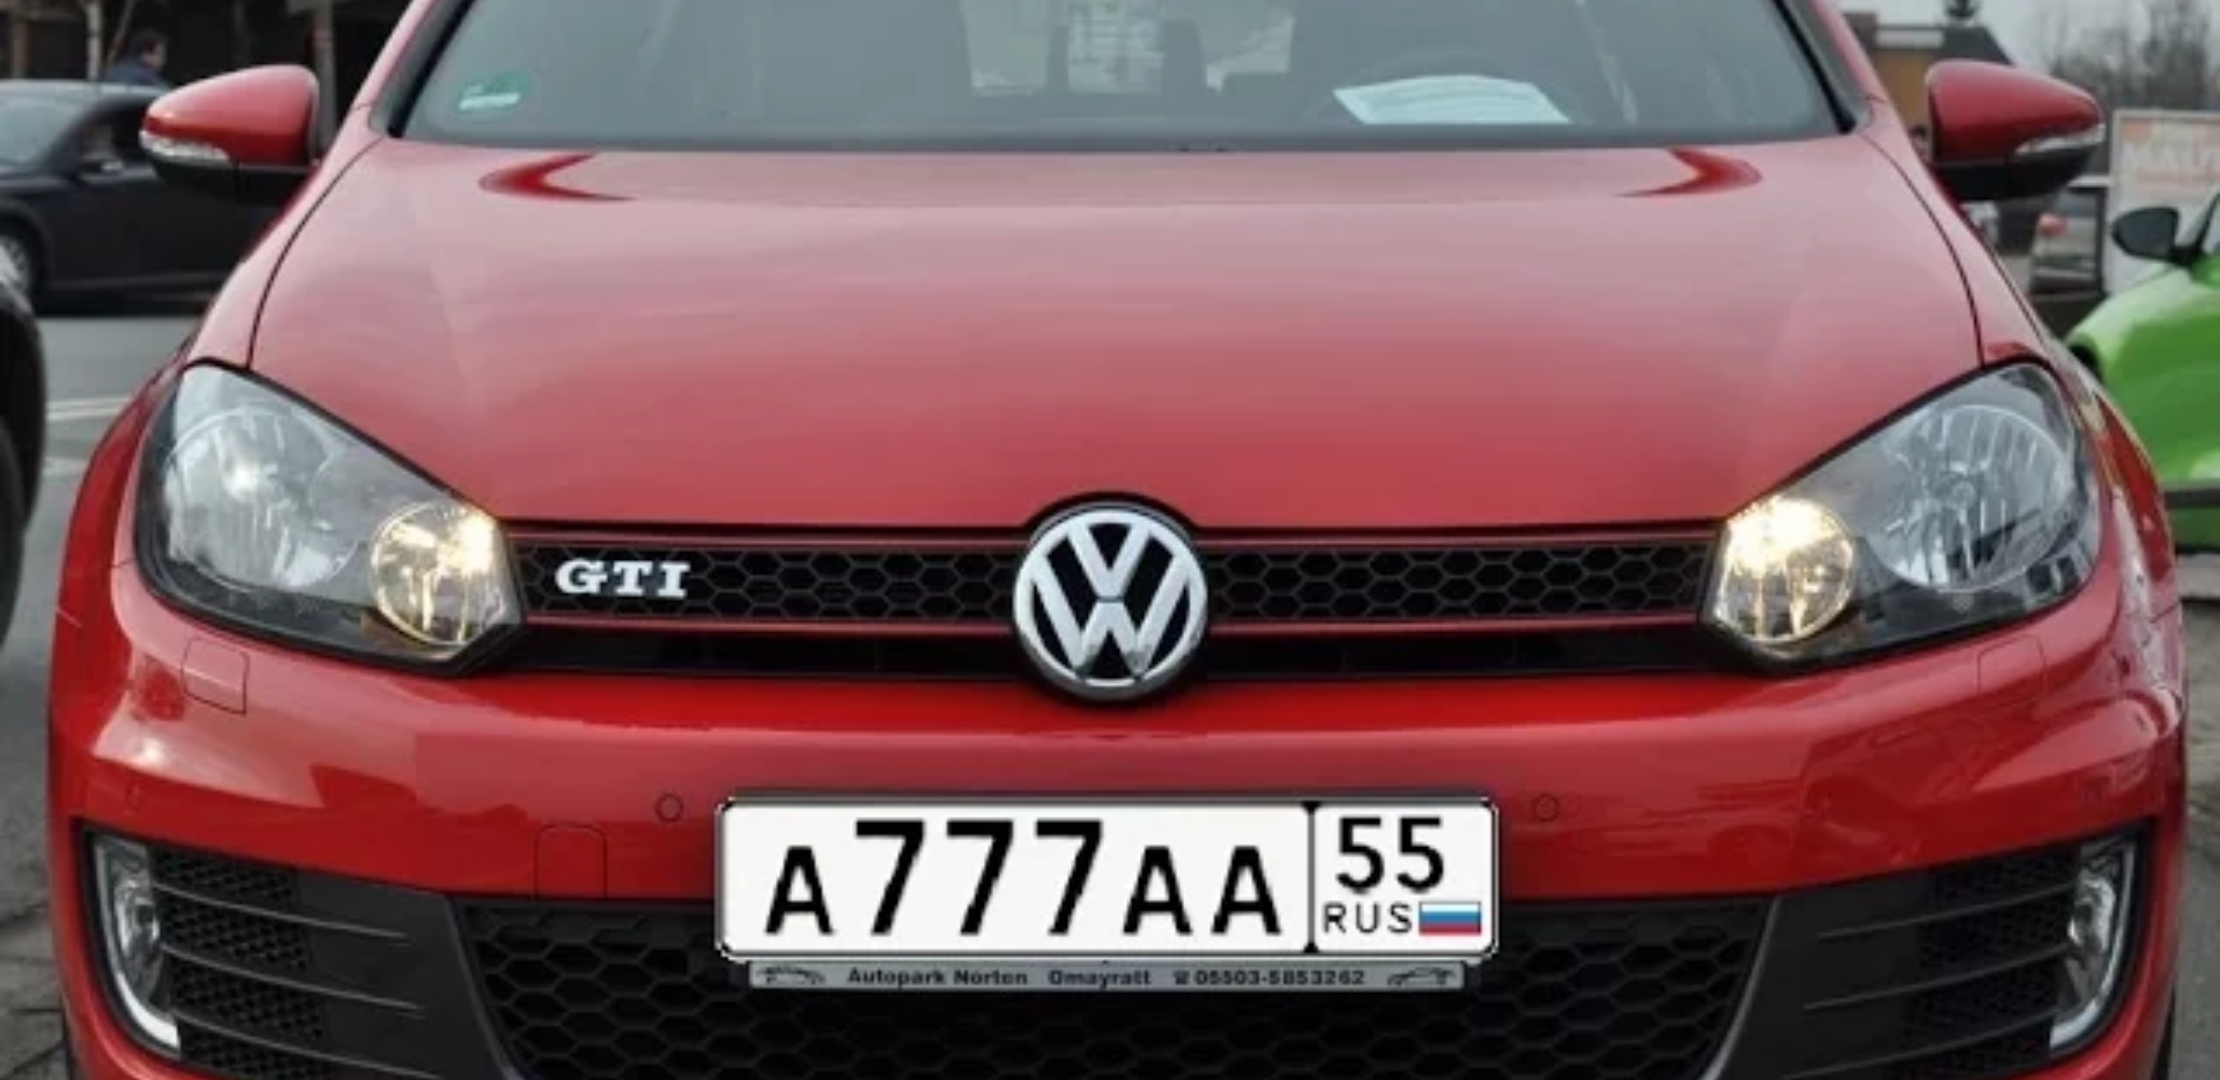 Анонс видео-теста VW Golf 6 - Проверка пробега!